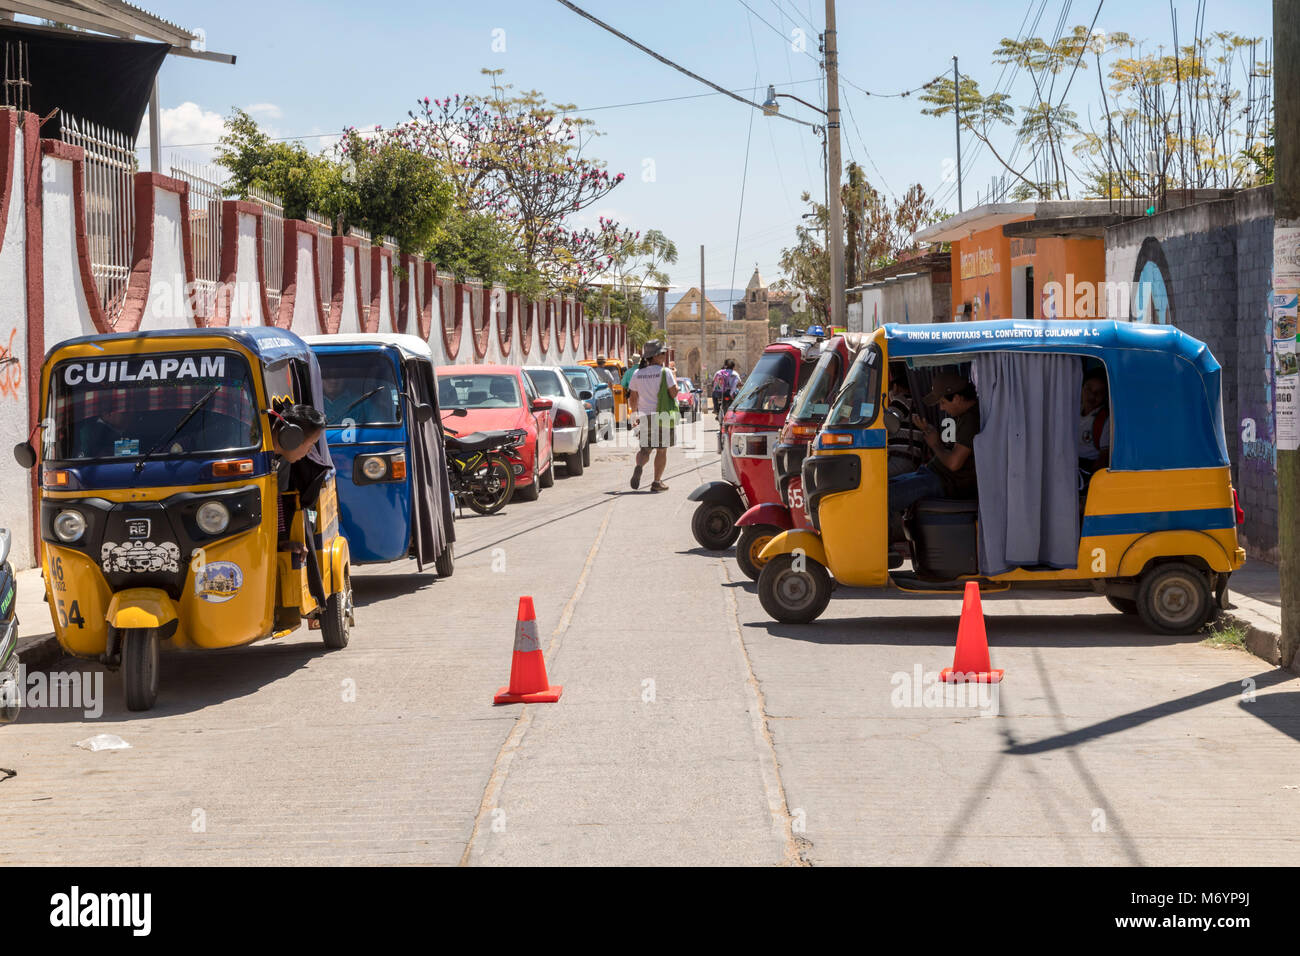 Cuilapam de Guerrero, Oaxaca, Messico - tre ruote city taxis, realizzato dalla società indiana, Tata Motors. Foto Stock